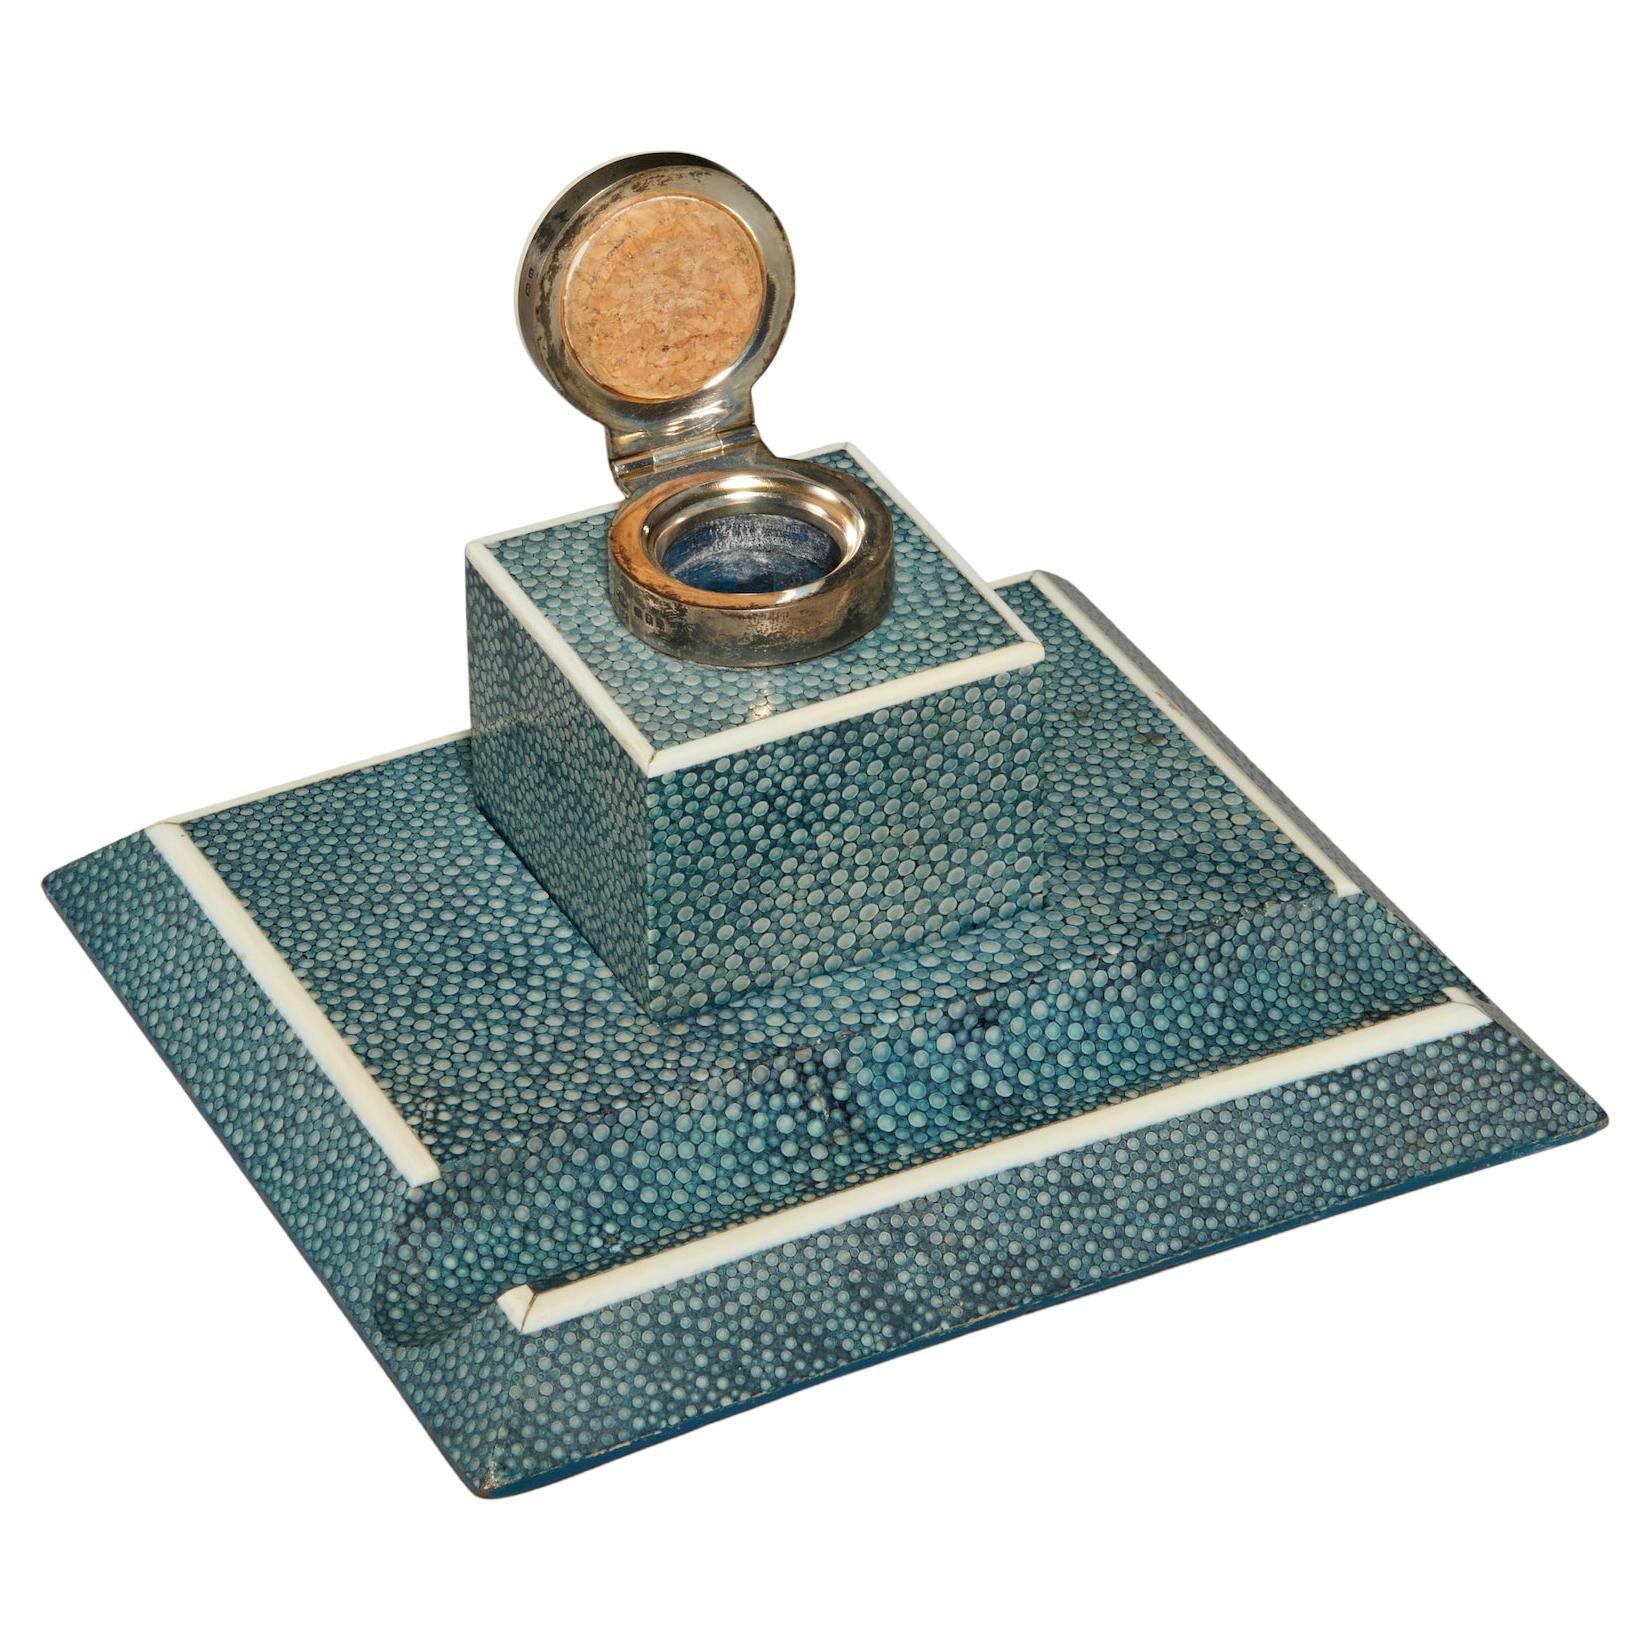 Englische Art Deco Periode Blau Chagrin Schreibtisch Set von einer Mappe und Tintenfass.
Silberpunze George Betjemann & Sons aus dem Jahr 1928.
 